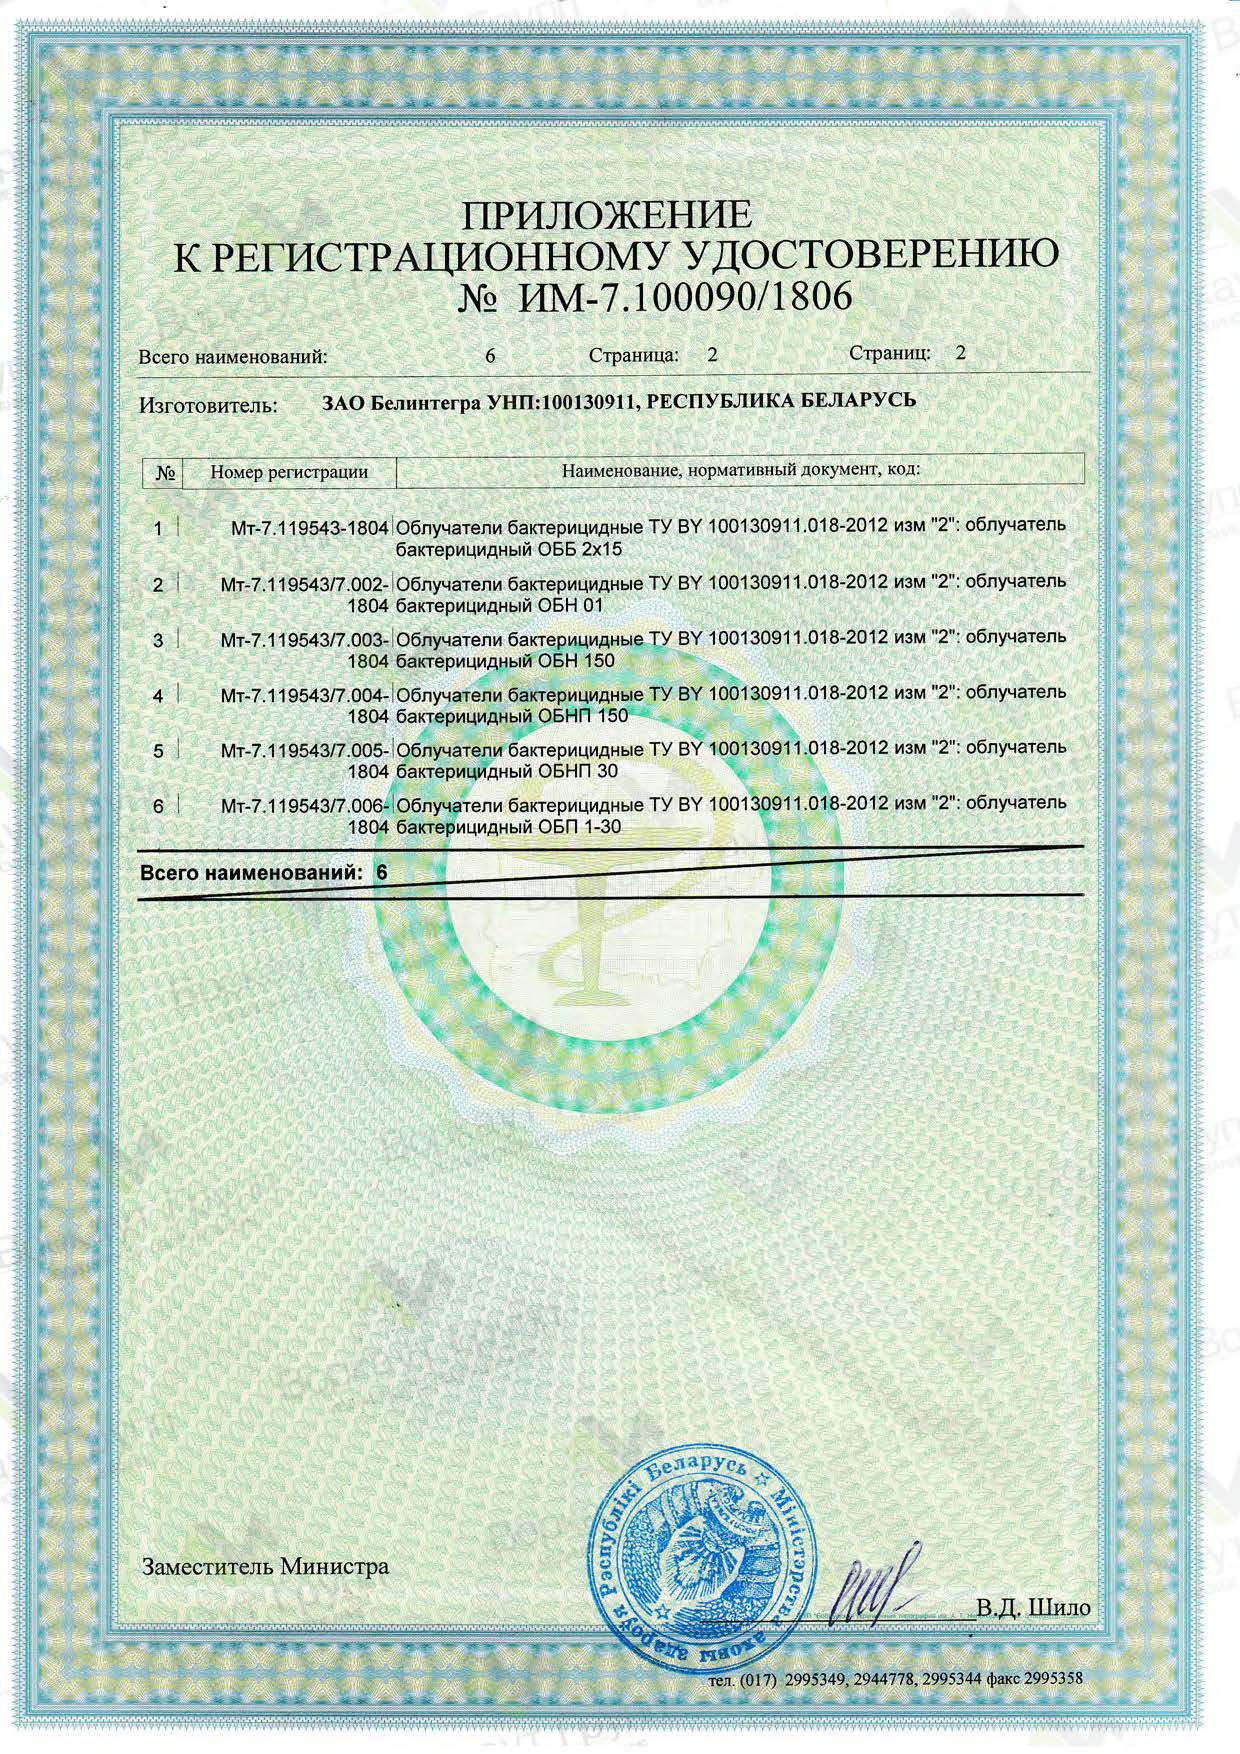 Регистрационное удостоверение Облучателя "ОБНП-15" копус (приложение)